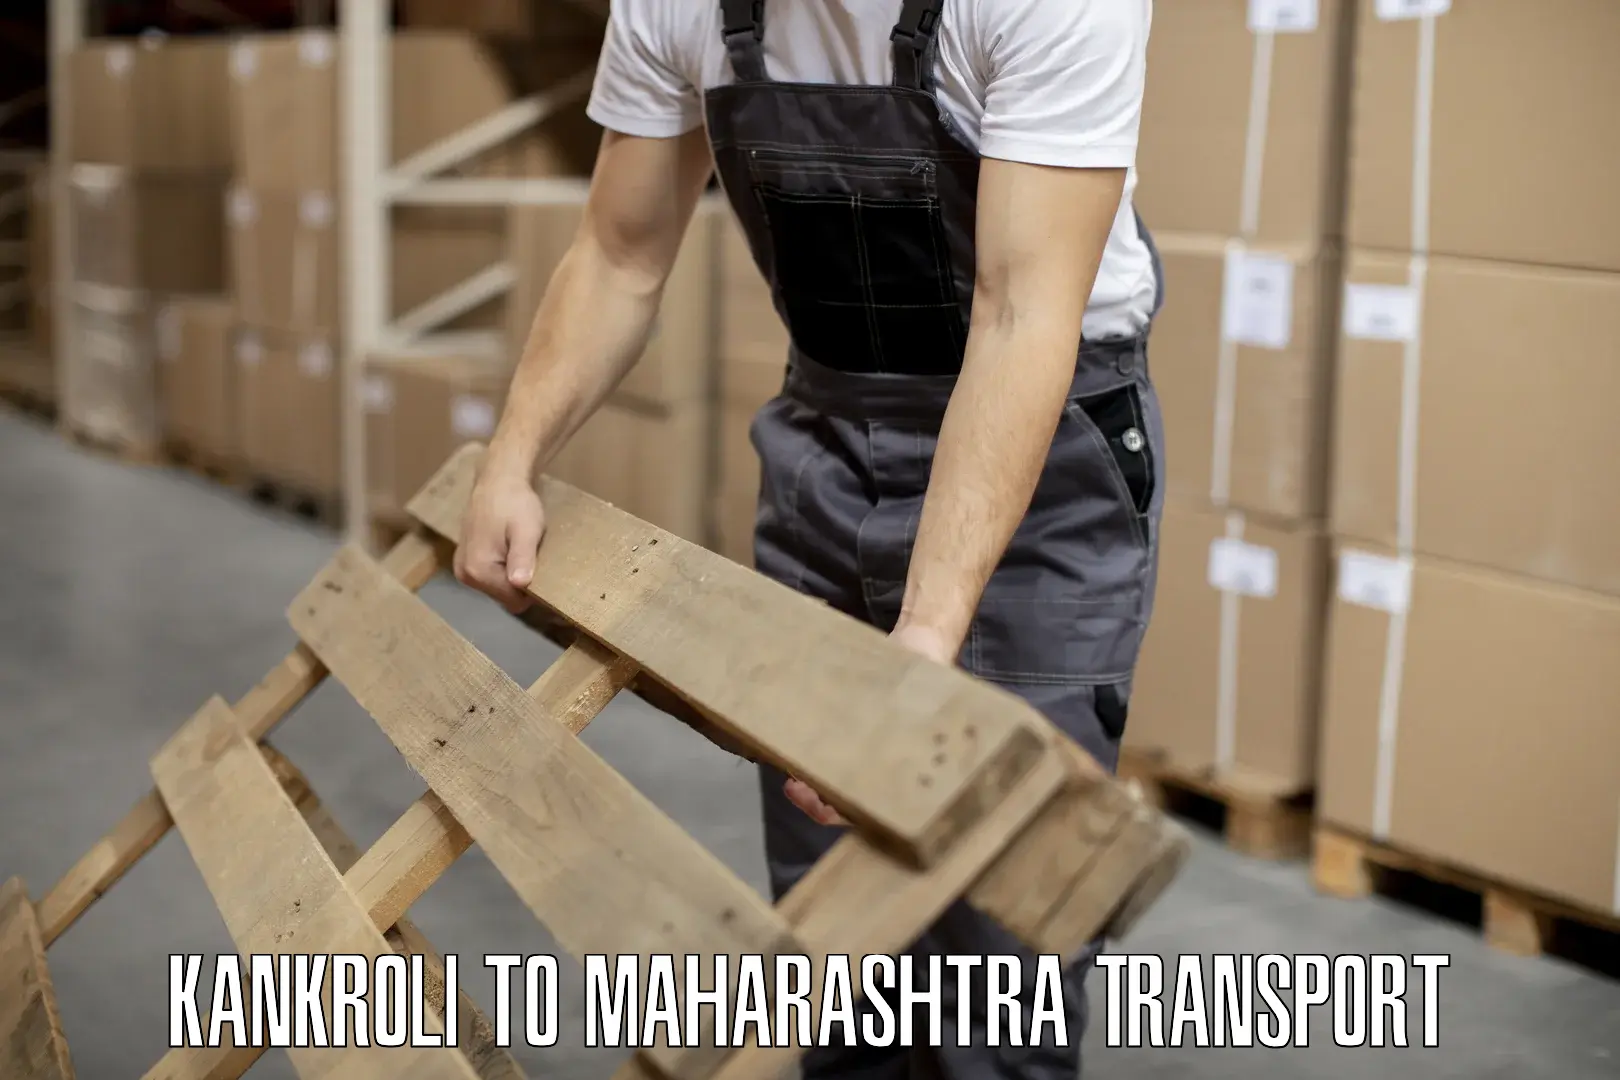 Material transport services Kankroli to Maharashtra